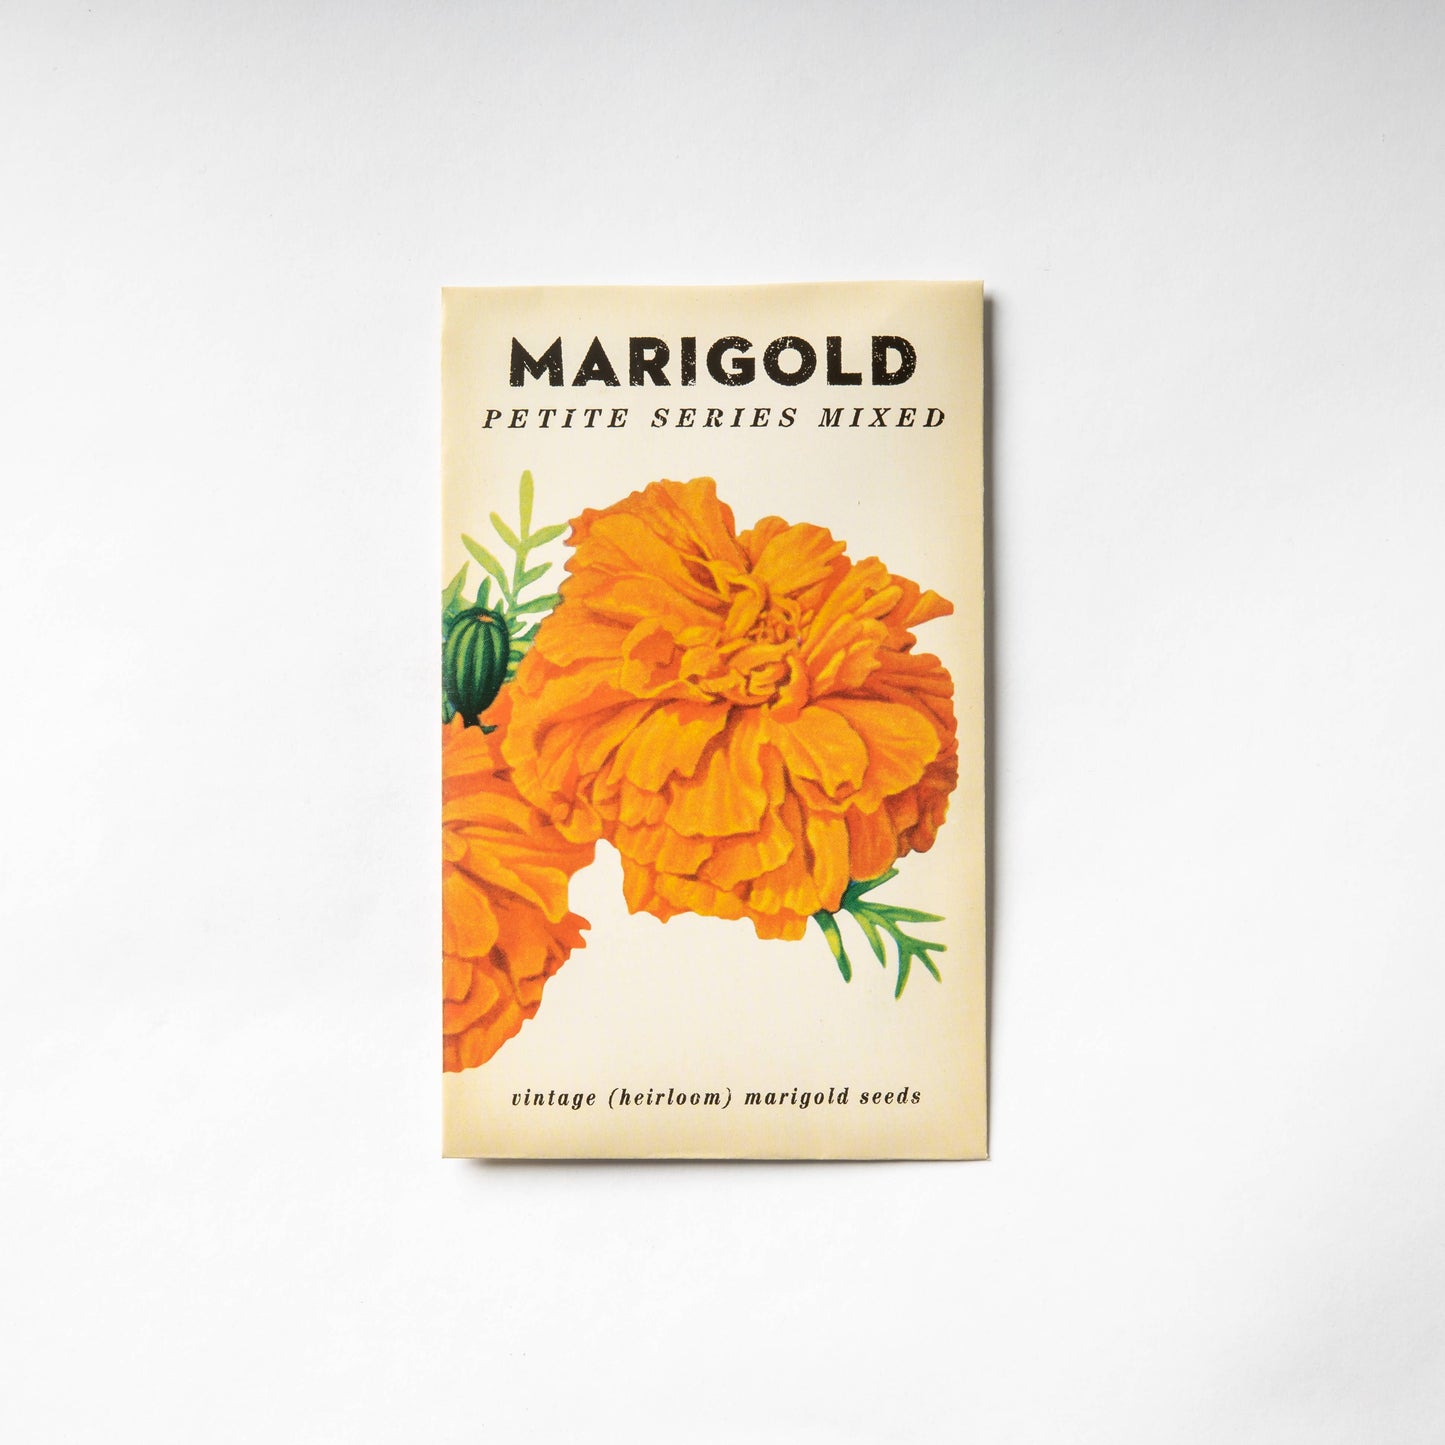 Marigold "Petit Series Mixed" Heirloom Seeds